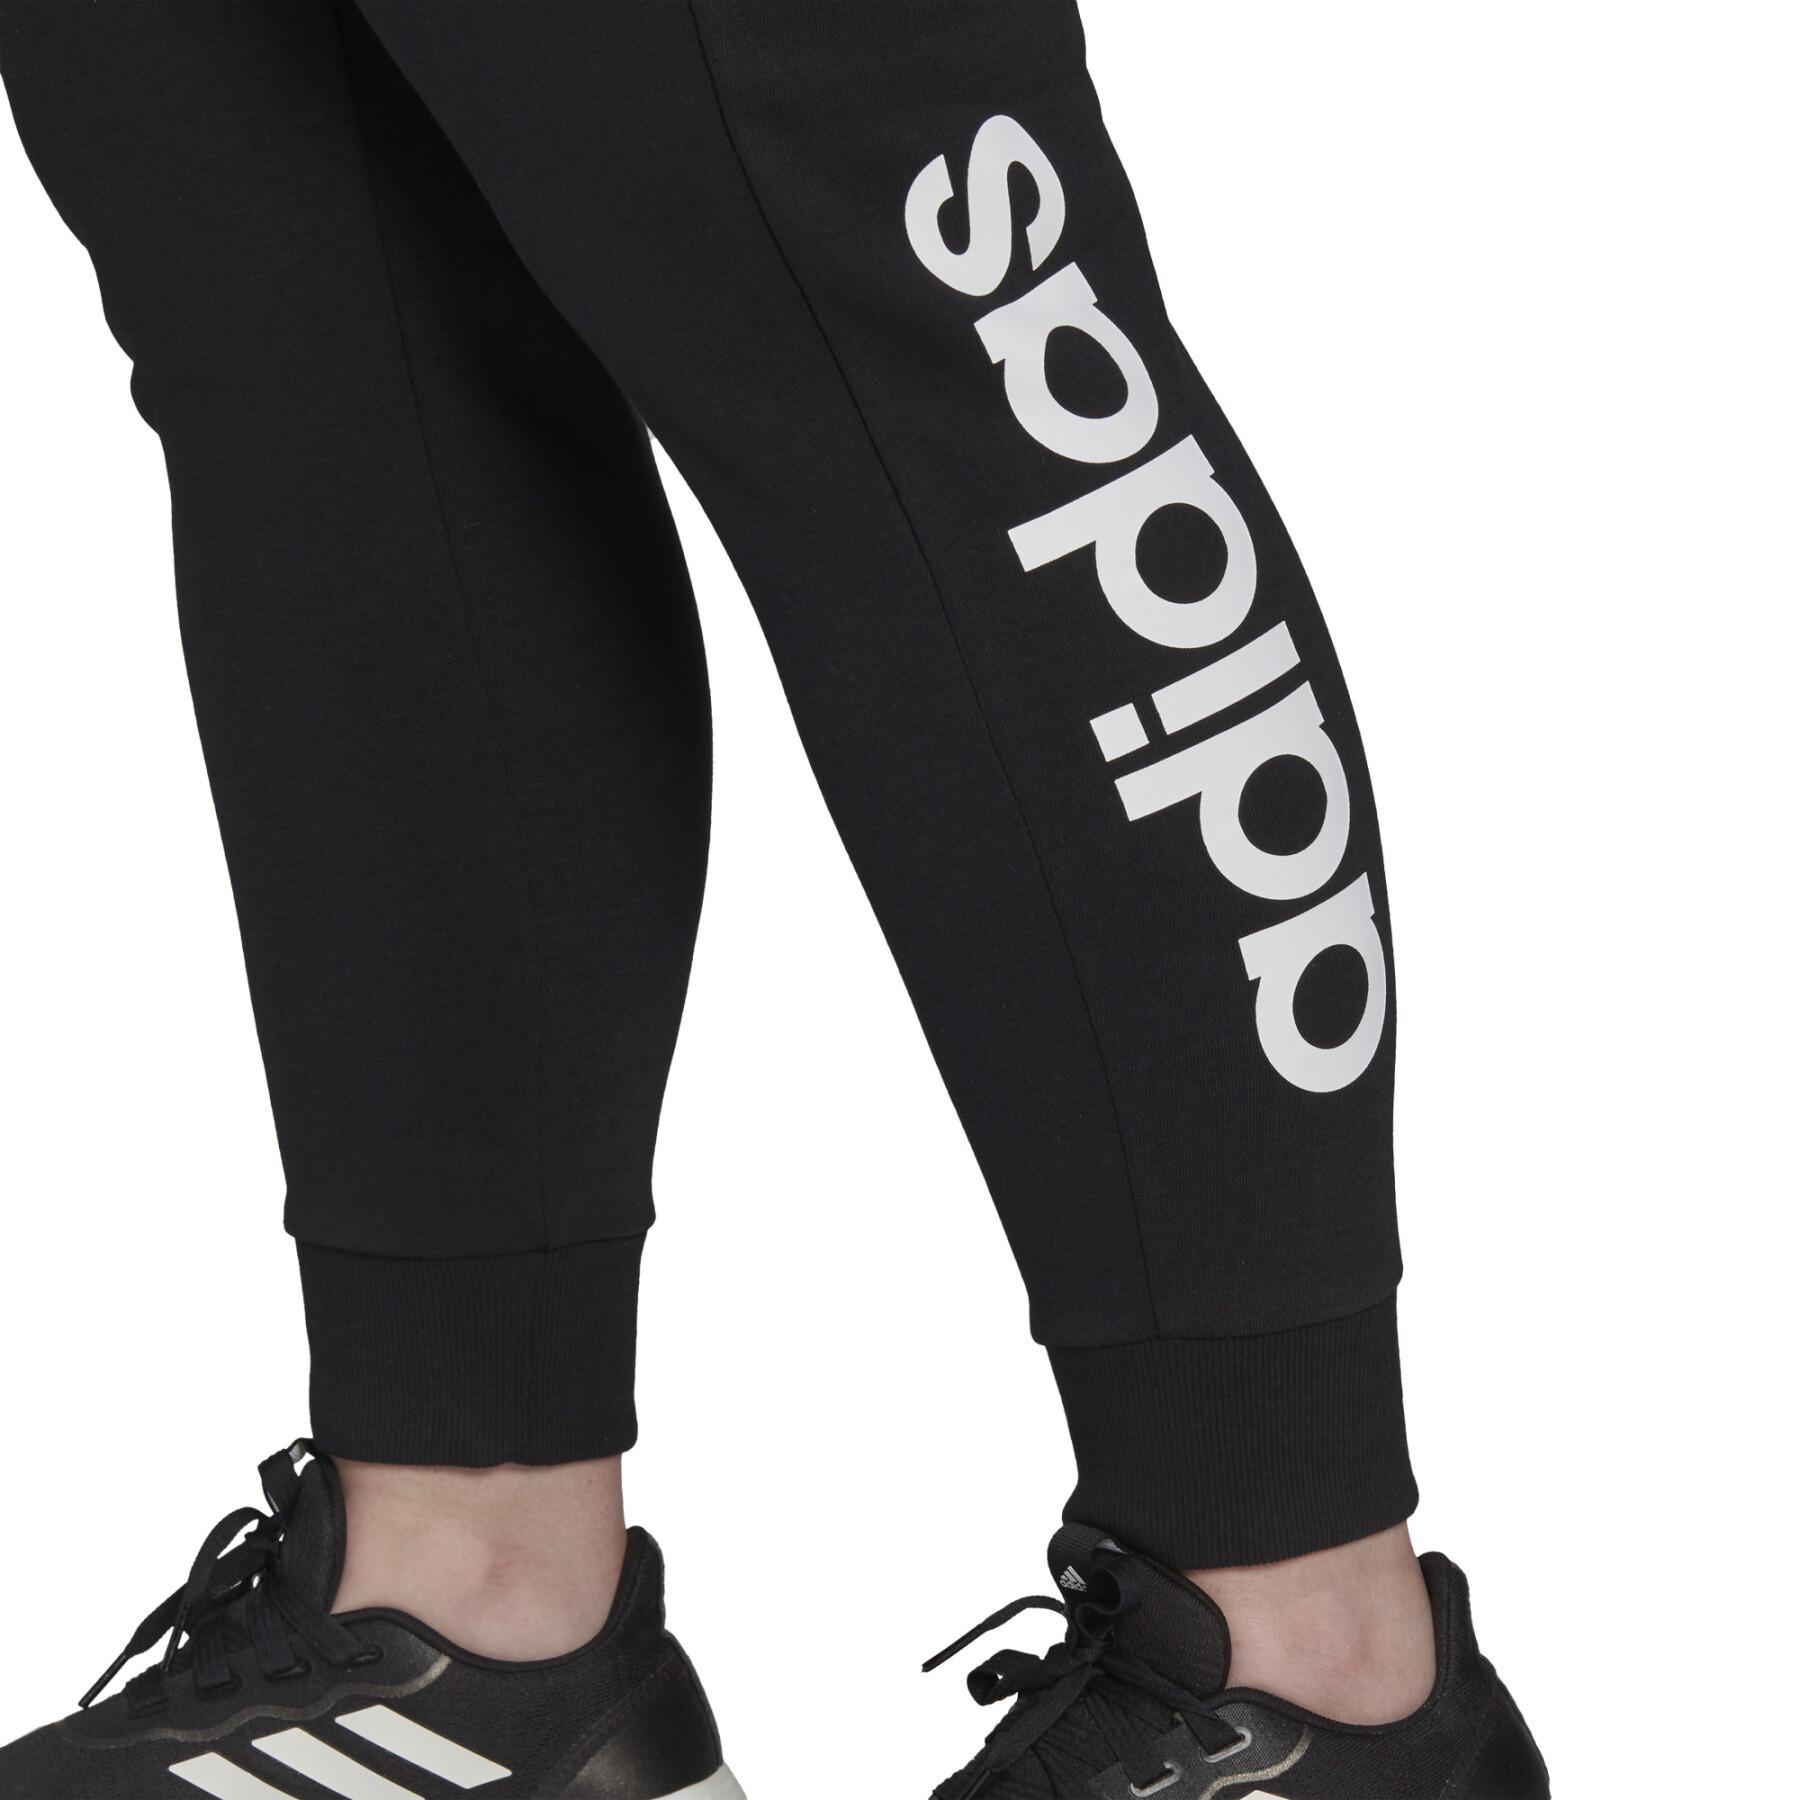 Duże spodnie damskie adidas Essentials French Terry Logo